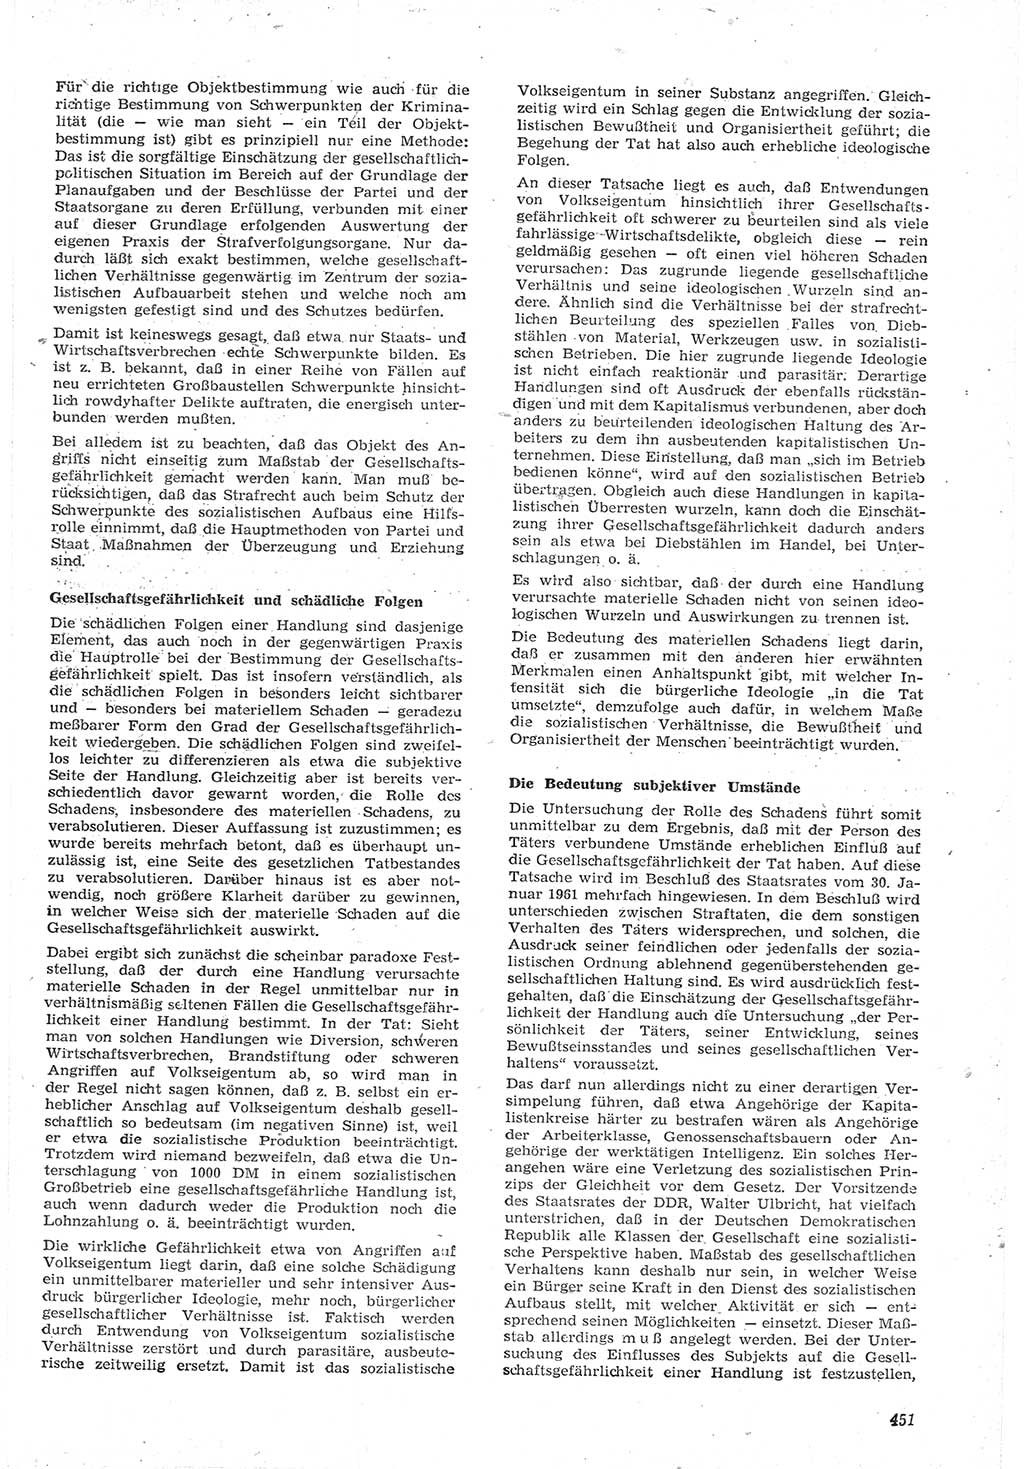 Neue Justiz (NJ), Zeitschrift für Recht und Rechtswissenschaft [Deutsche Demokratische Republik (DDR)], 15. Jahrgang 1961, Seite 451 (NJ DDR 1961, S. 451)